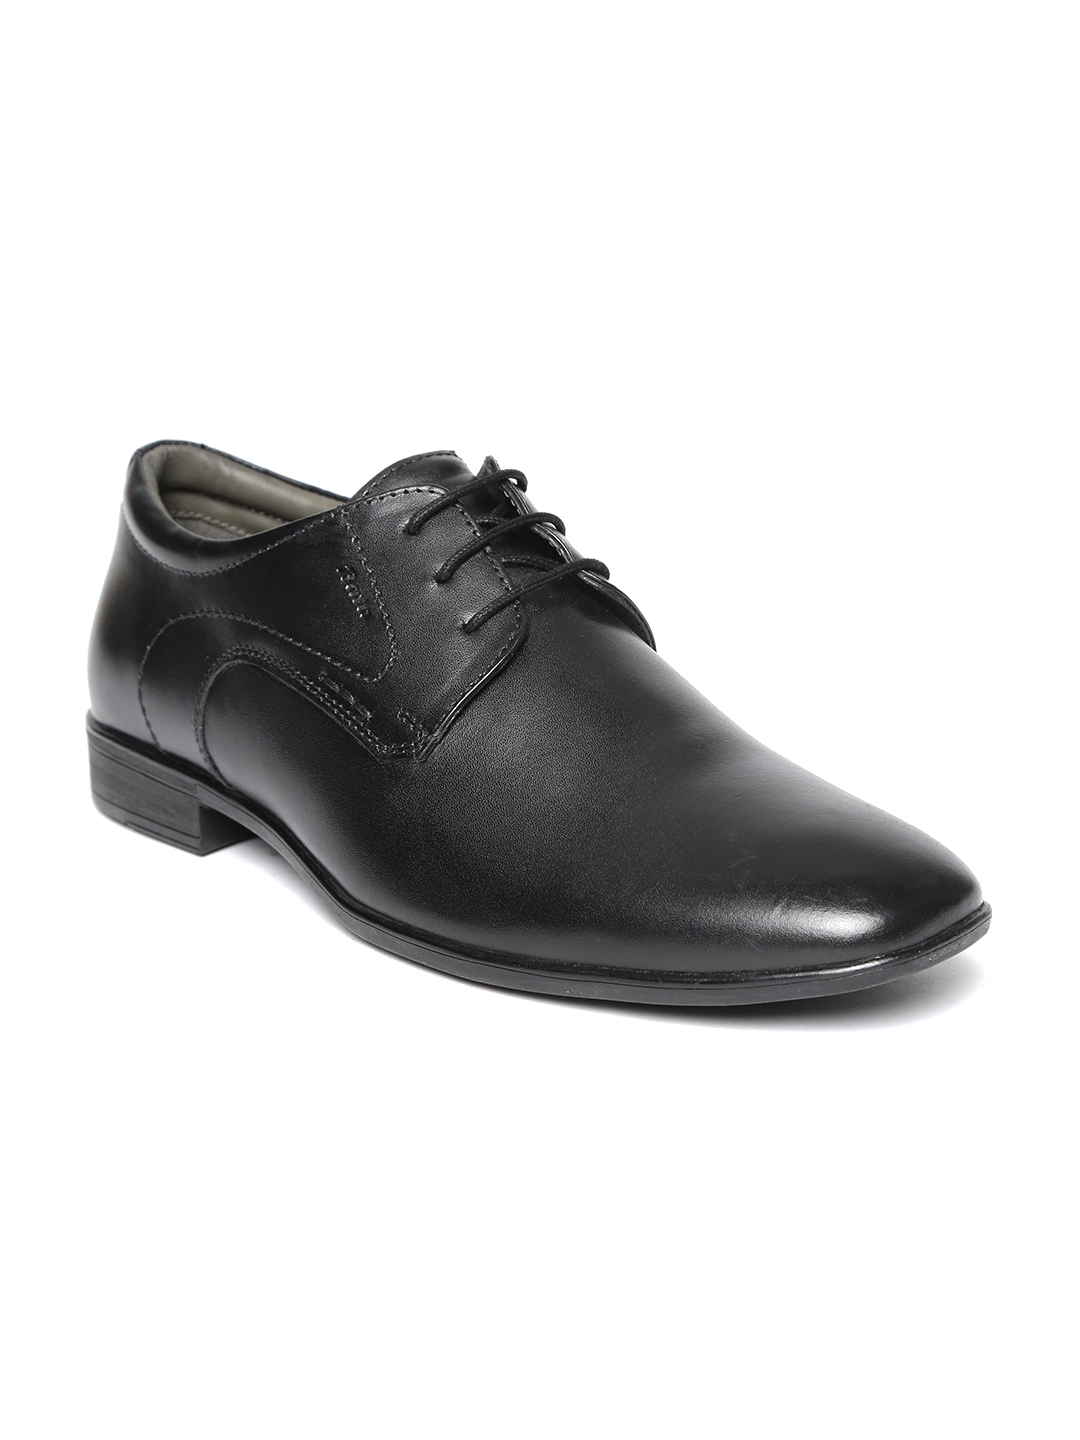 Buy Bata Men Black Formal Derbys - Formal Shoes for Men 5801806 | Myntra